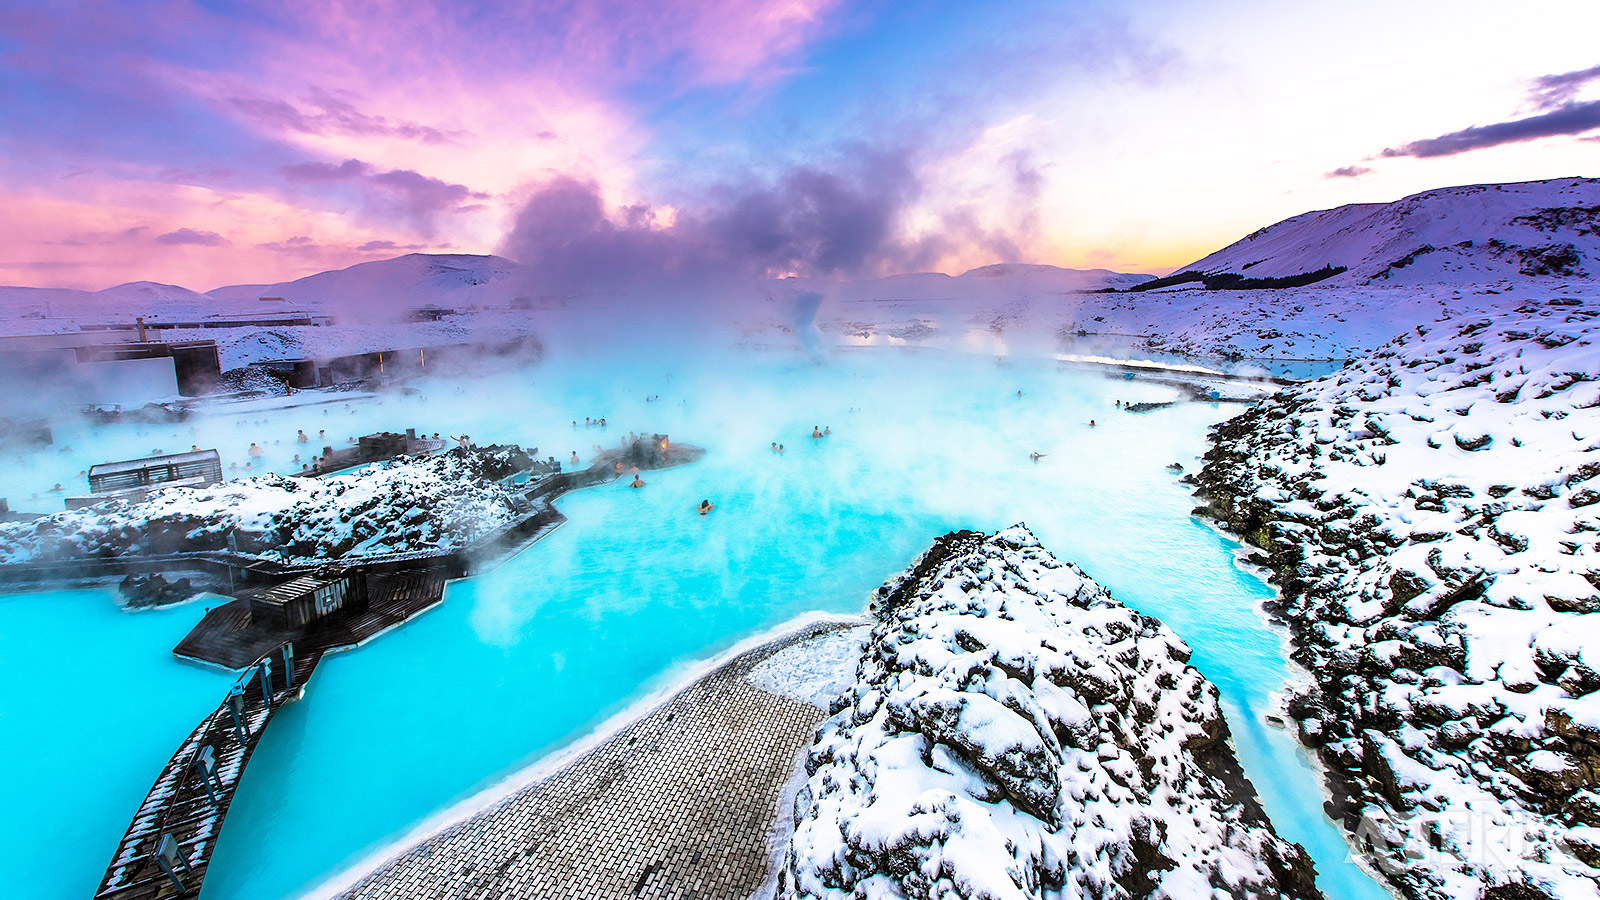 De warme, minerale water van de Blue Lagoon is één van de populairste attracties van IJsland